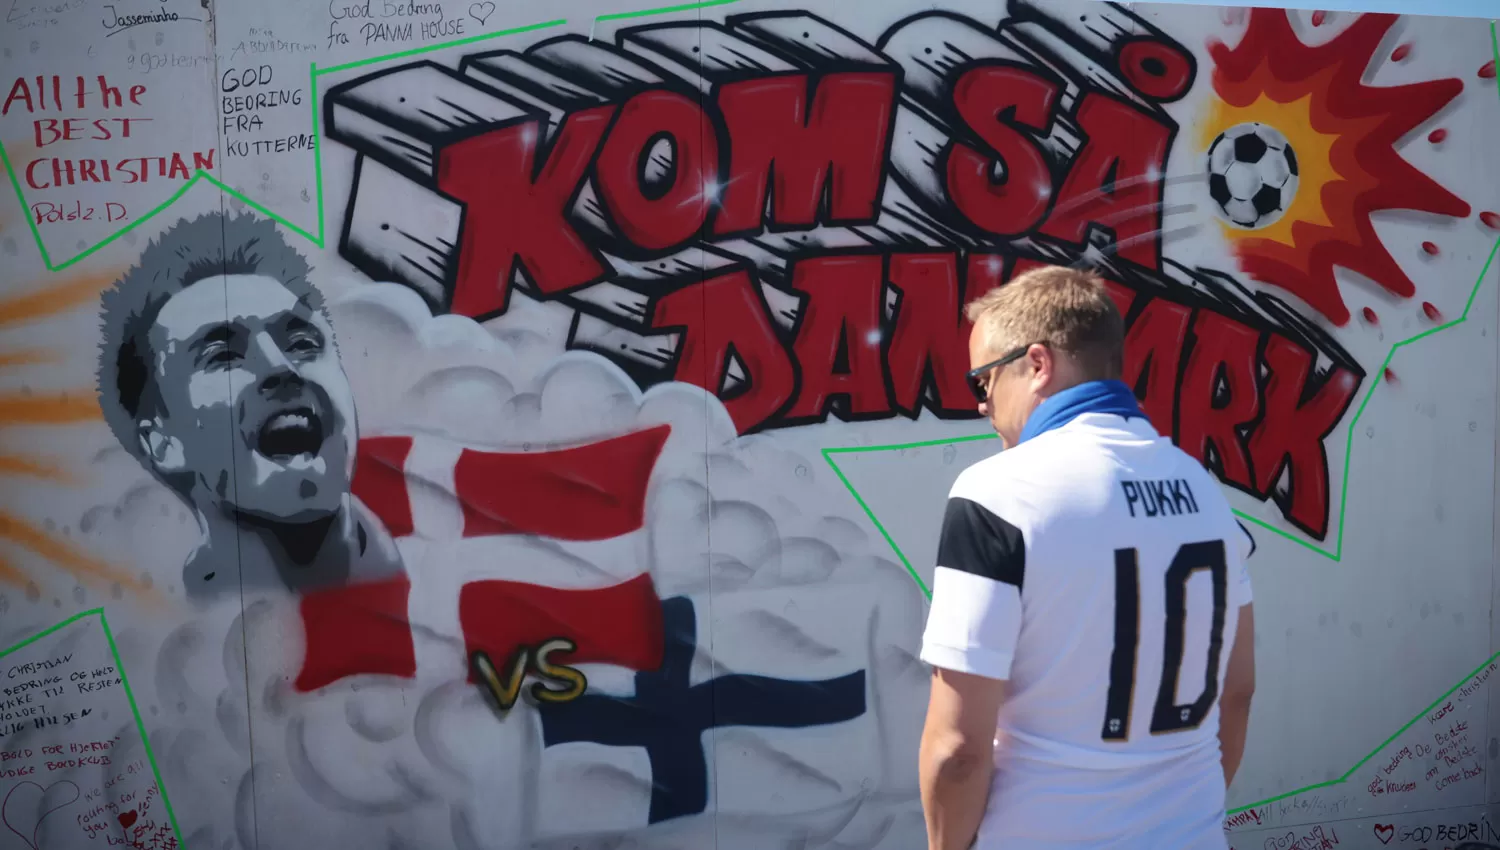 HOMENAJE. Un hincha mira el mural que le dedicaron a Eriksen en Copenhagen.